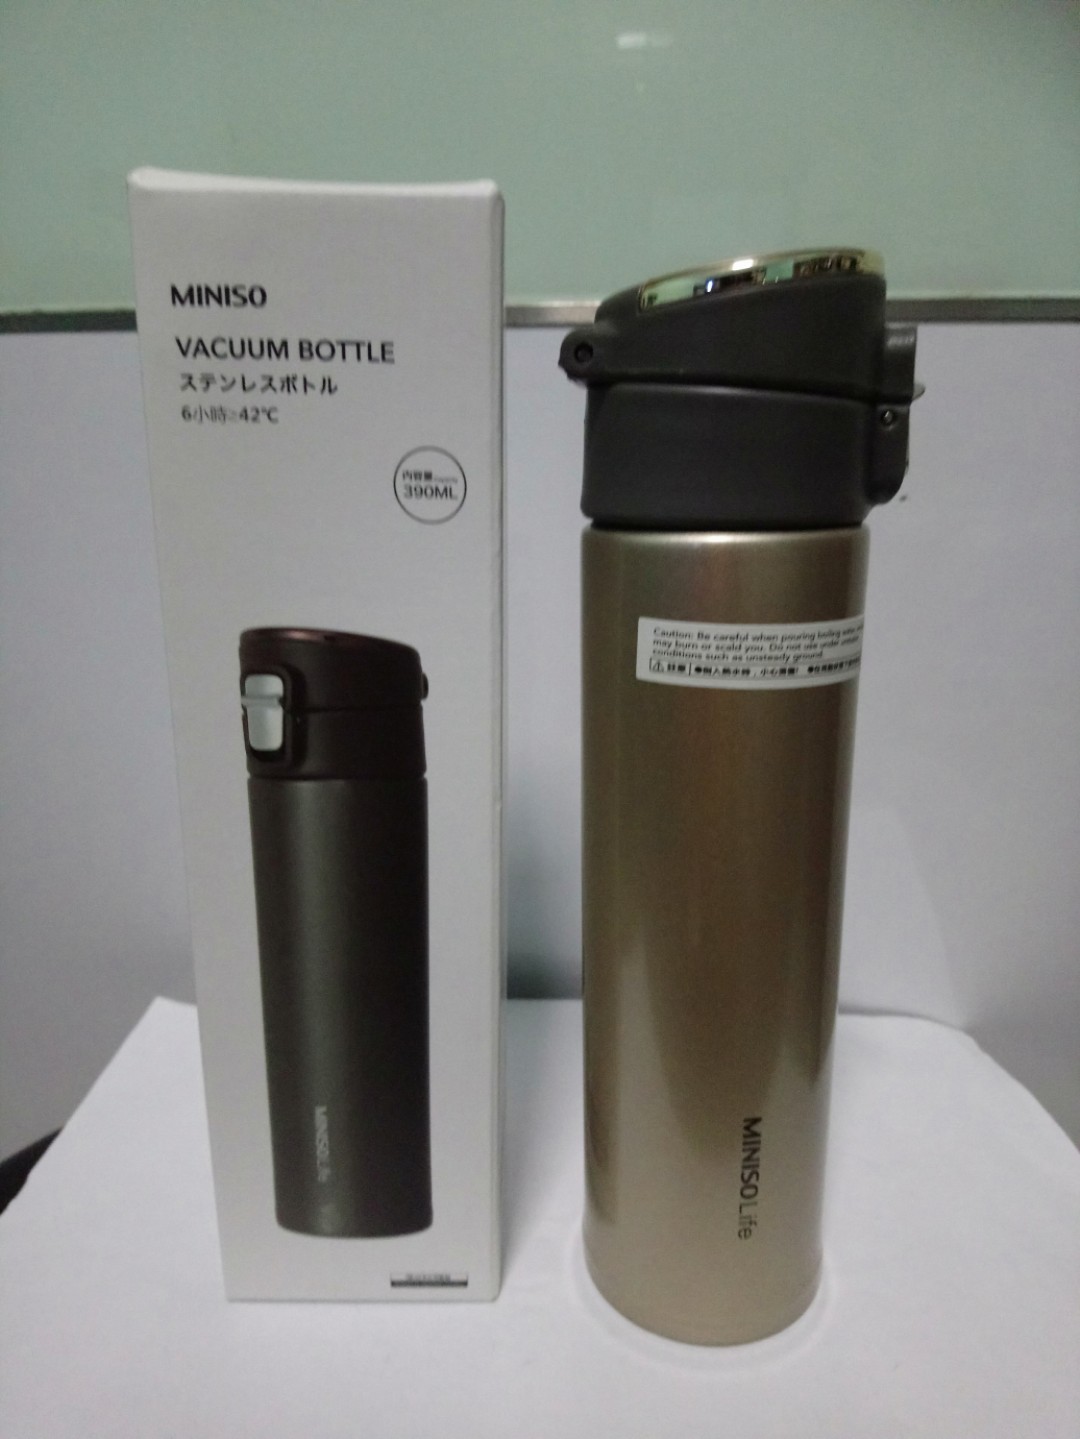 Miniso Vacuum Bottle, Home Appliances 